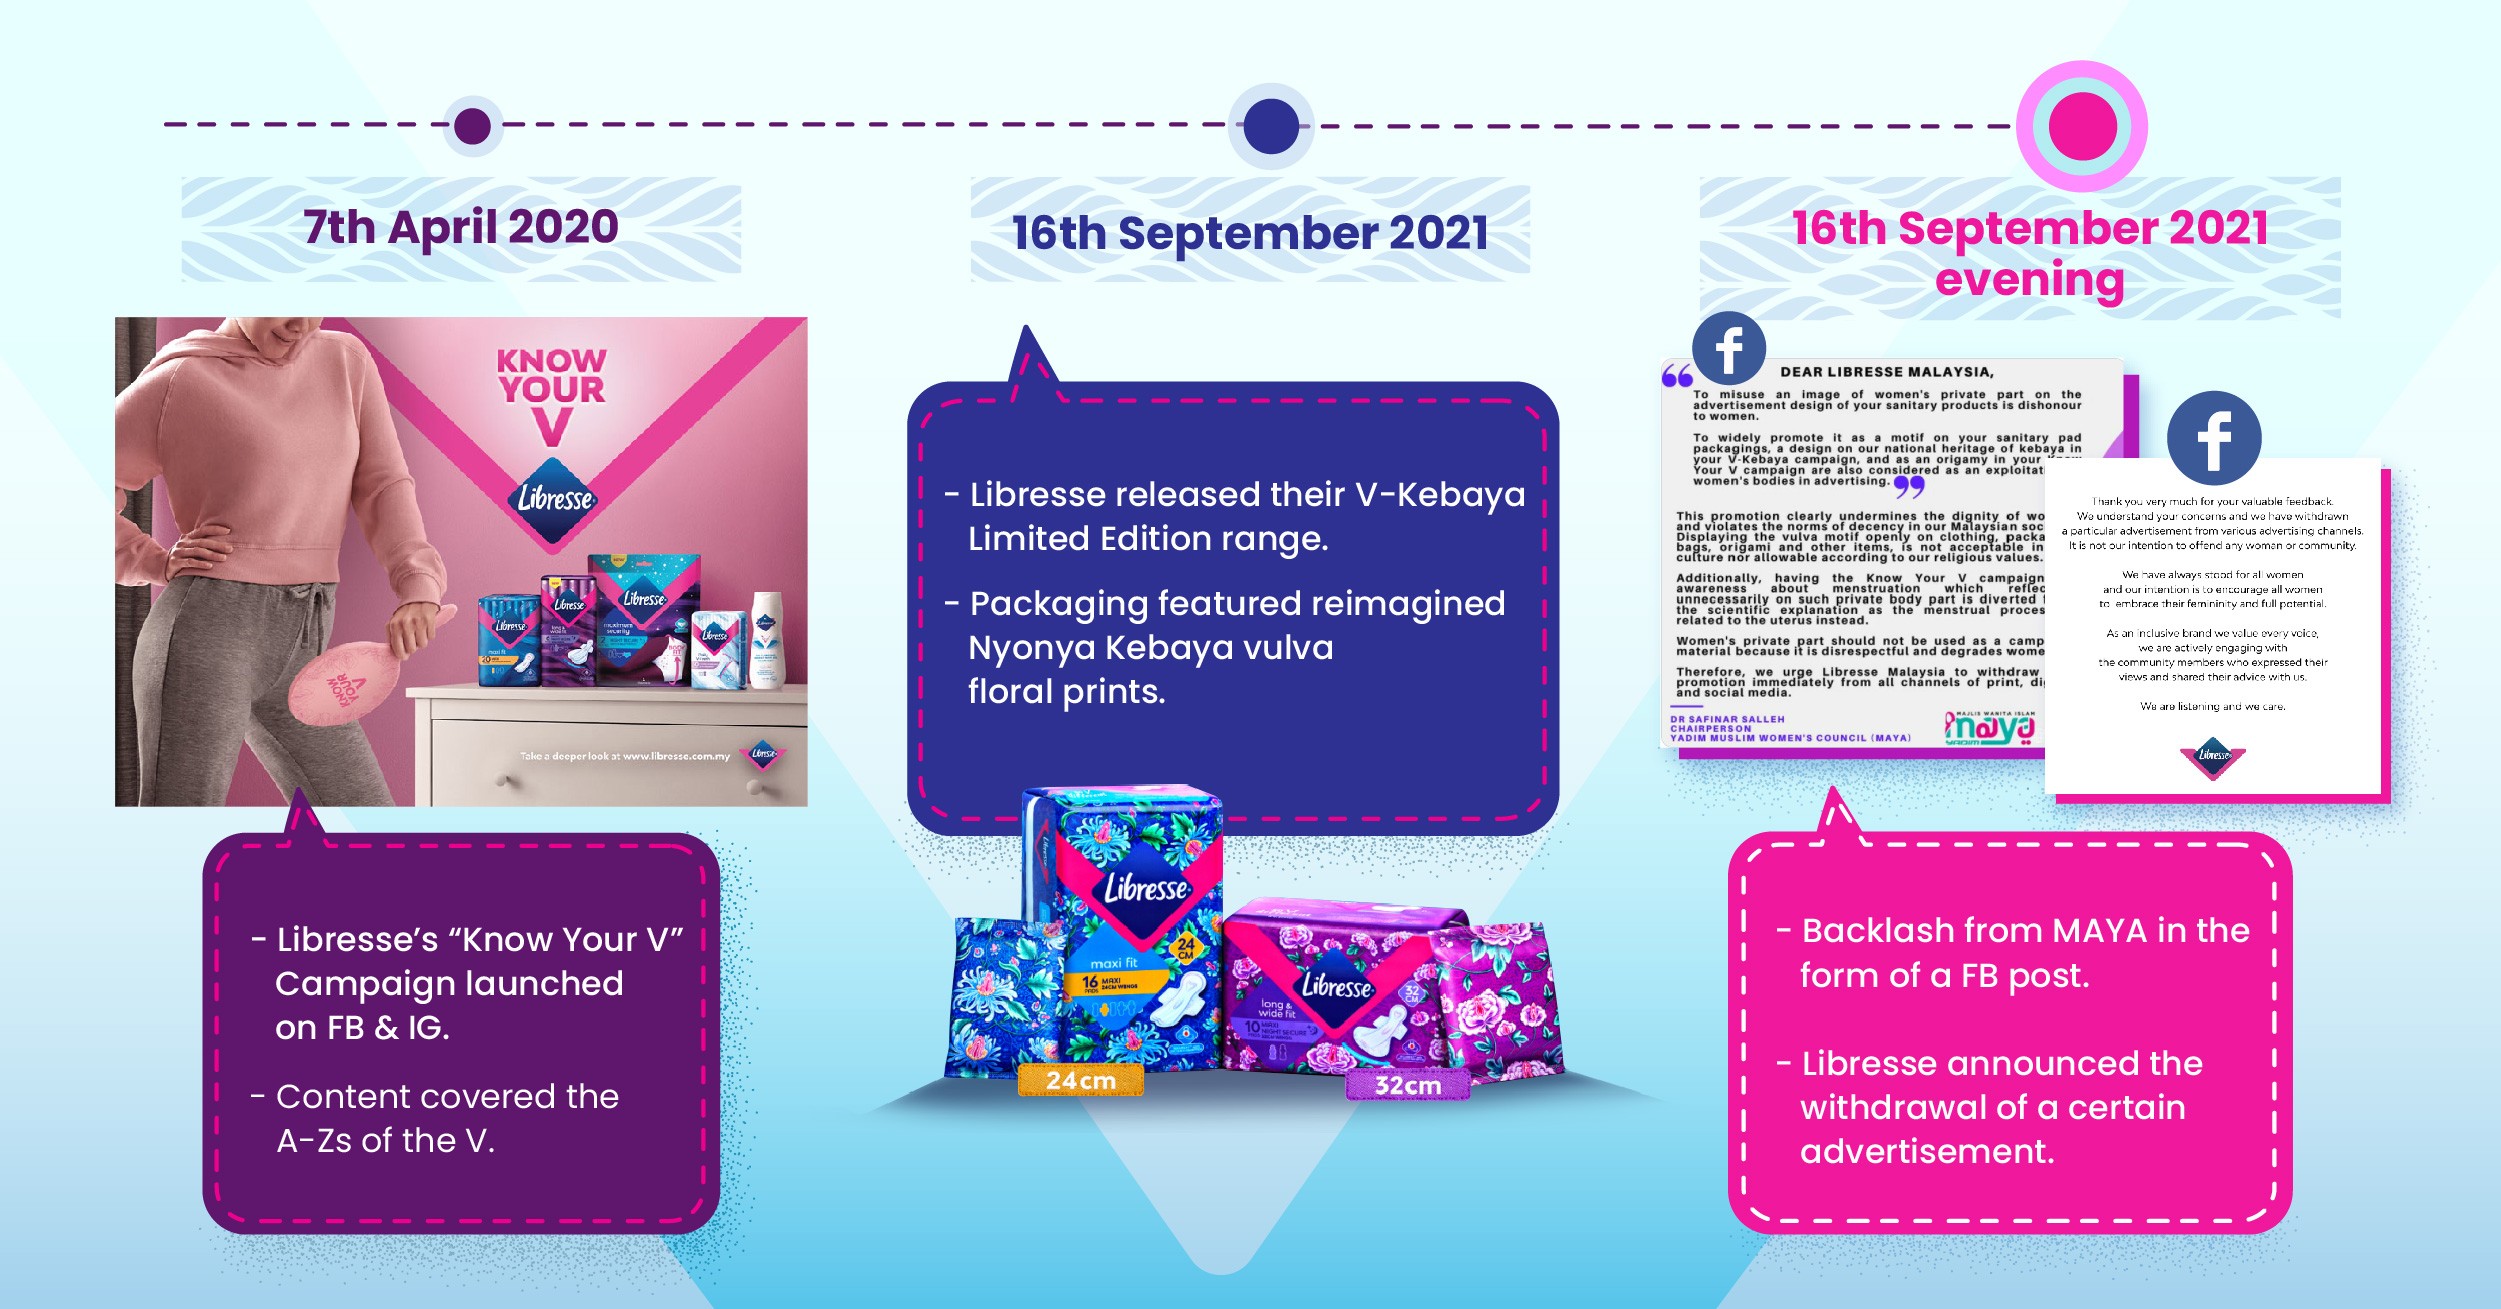 Timeline of Libresse's V-Kebaya Packaging controversy